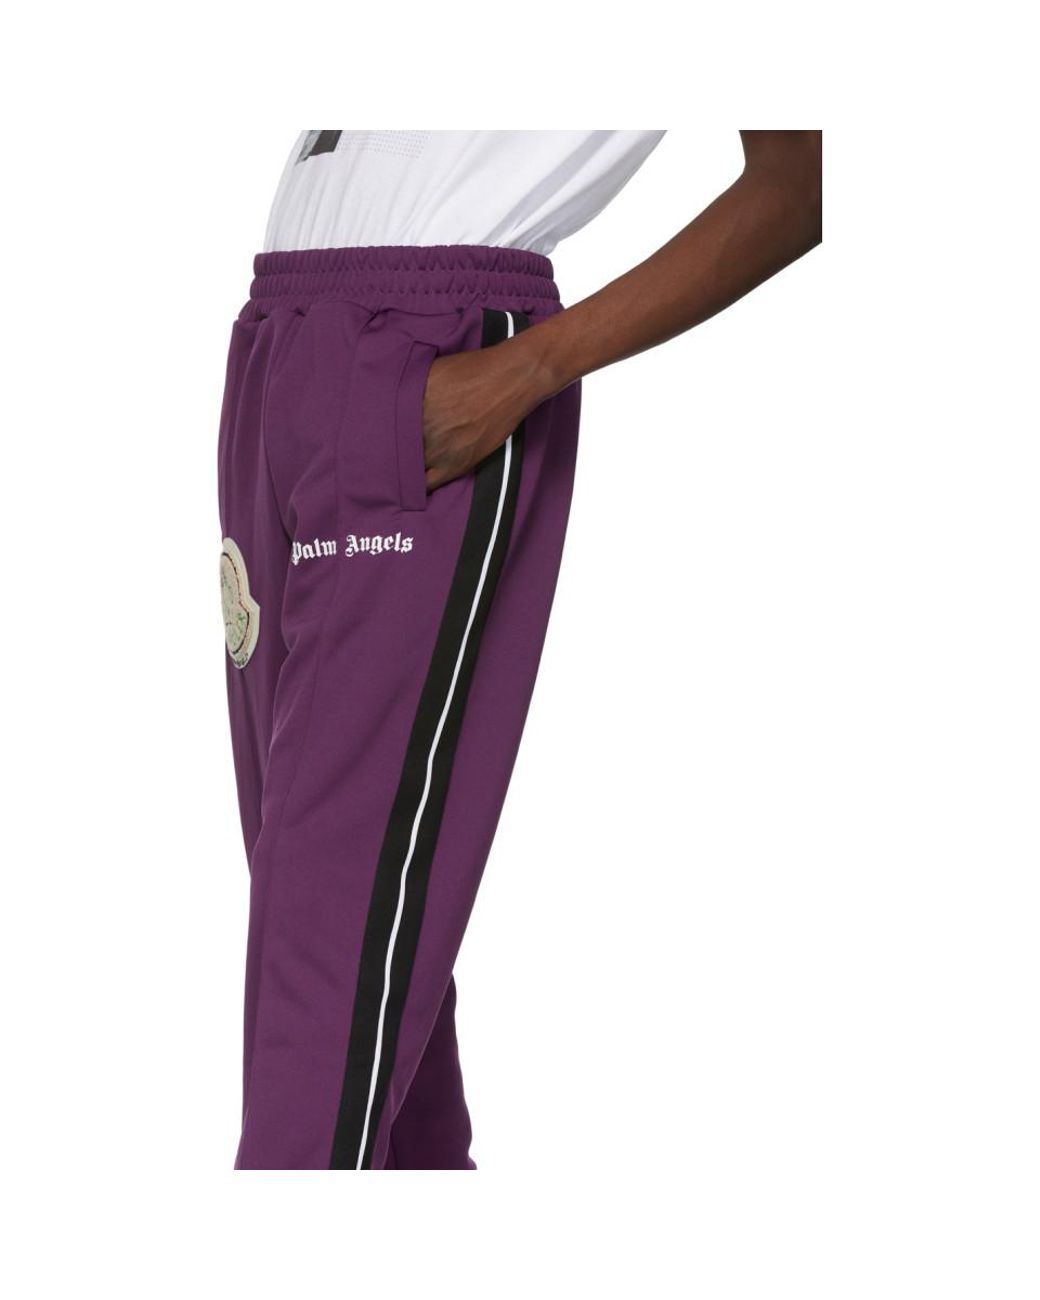 Moncler Genius Leather 8 Moncler Palm Angels Purple Logo Patch Lounge Pants  for Men | Lyst